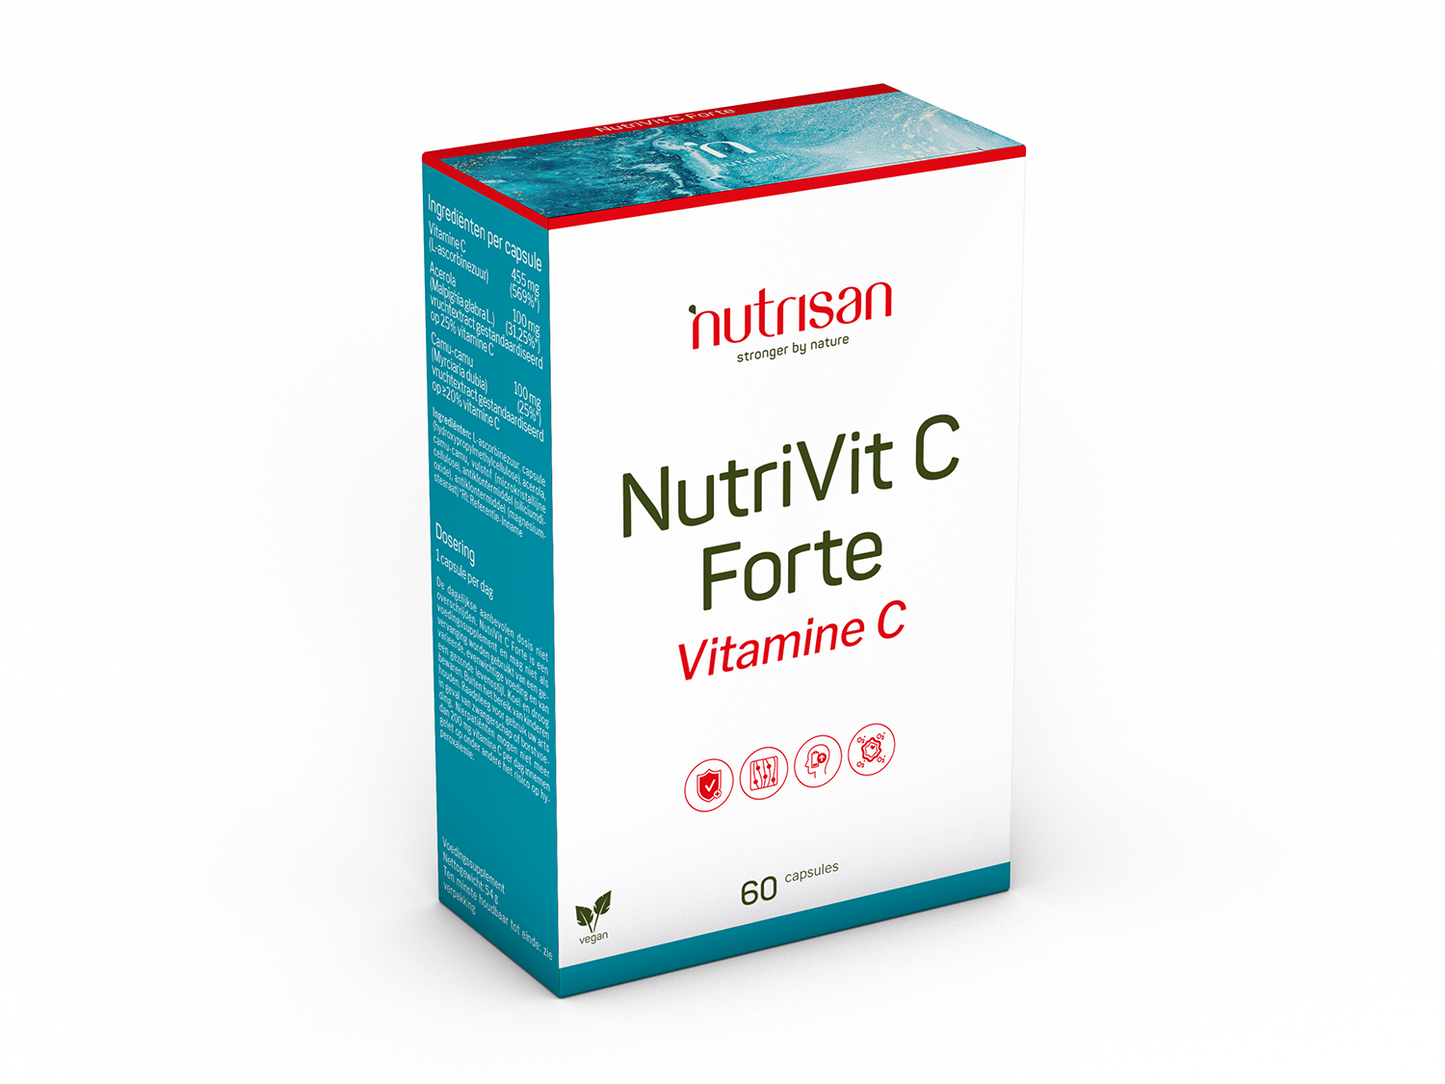 Nutrisan NutriVit C Forte - Vitamine C - Supplement bij stress en vermoeidheid